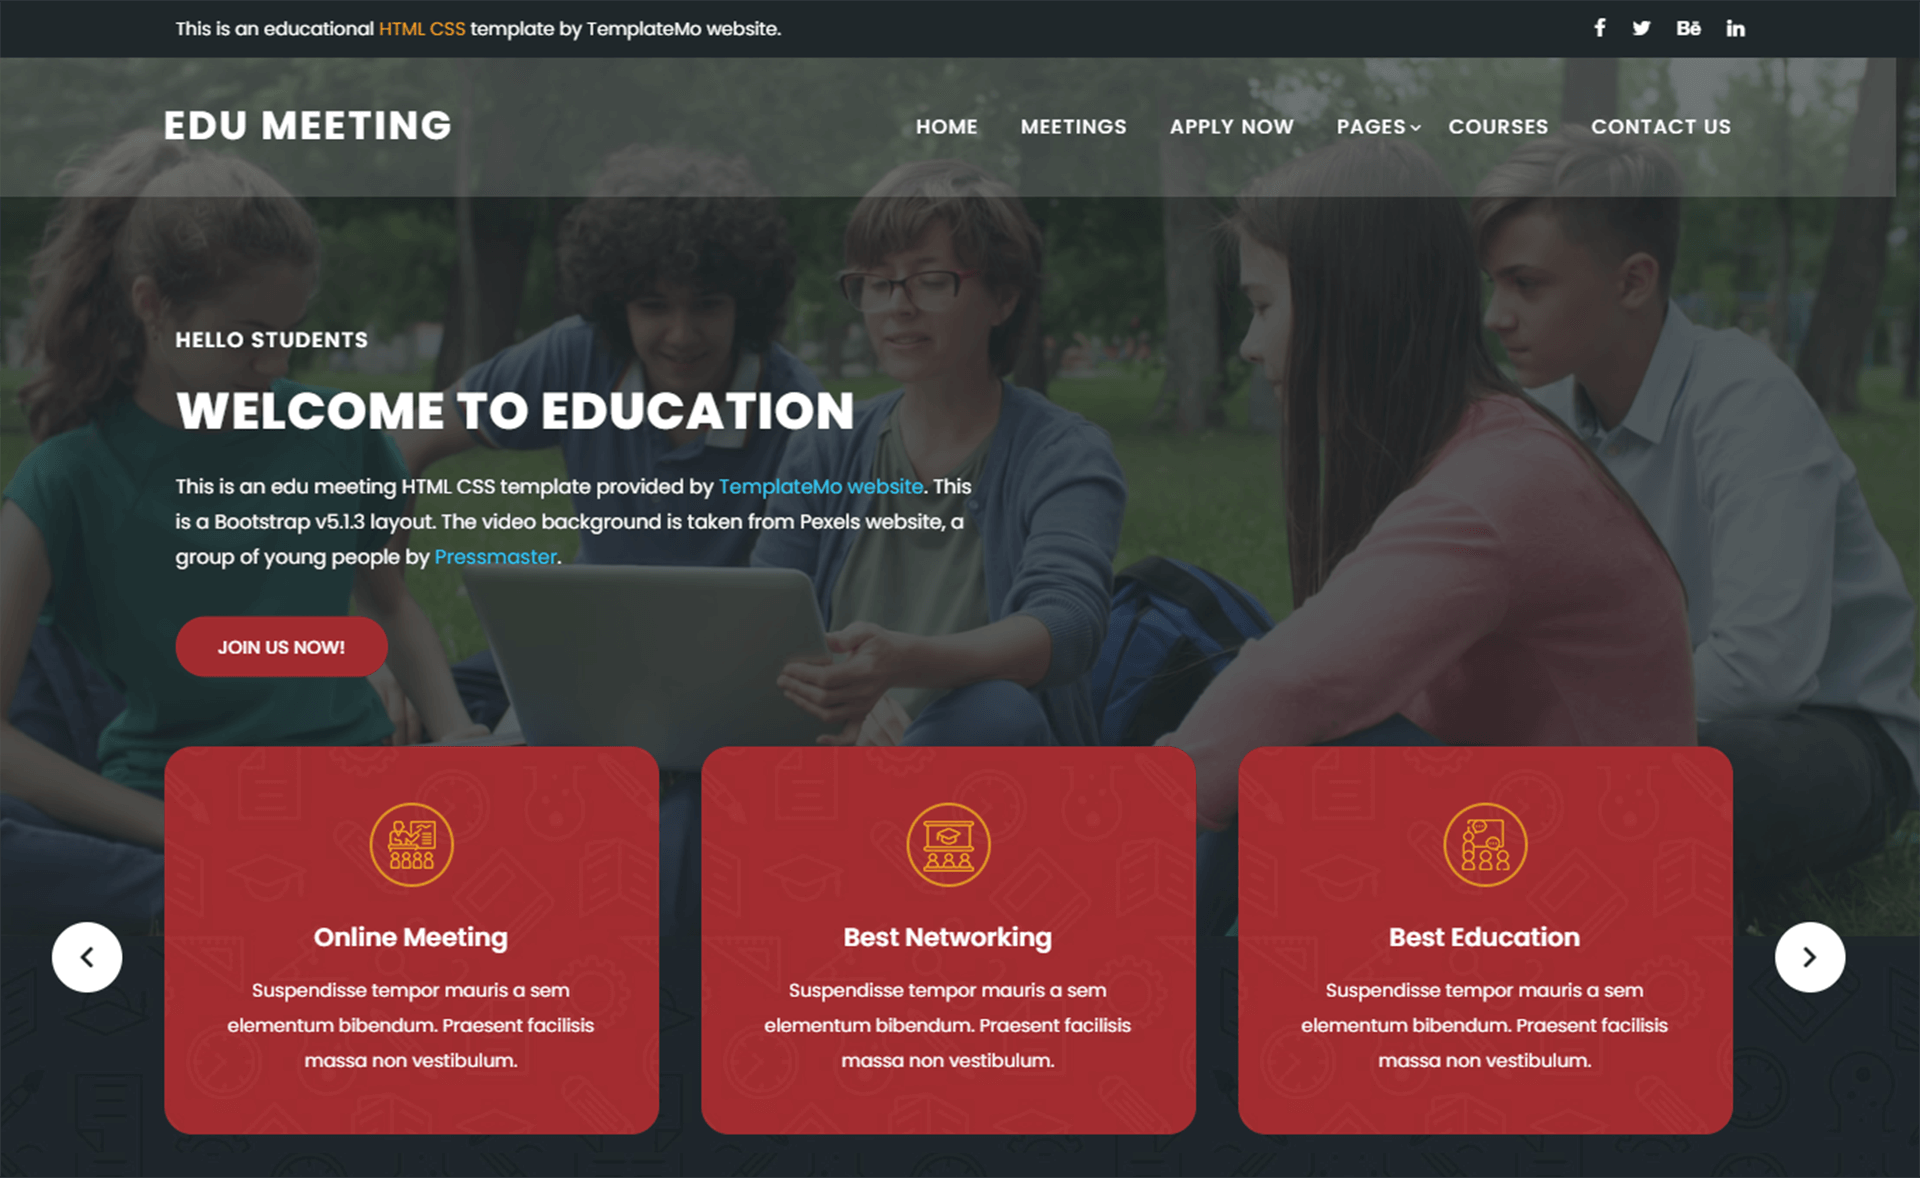 免费简约宏伟设计Bootstrap 5 透明视频背景教育学校网站响应式css3自适应HTML5网站模板免费下载